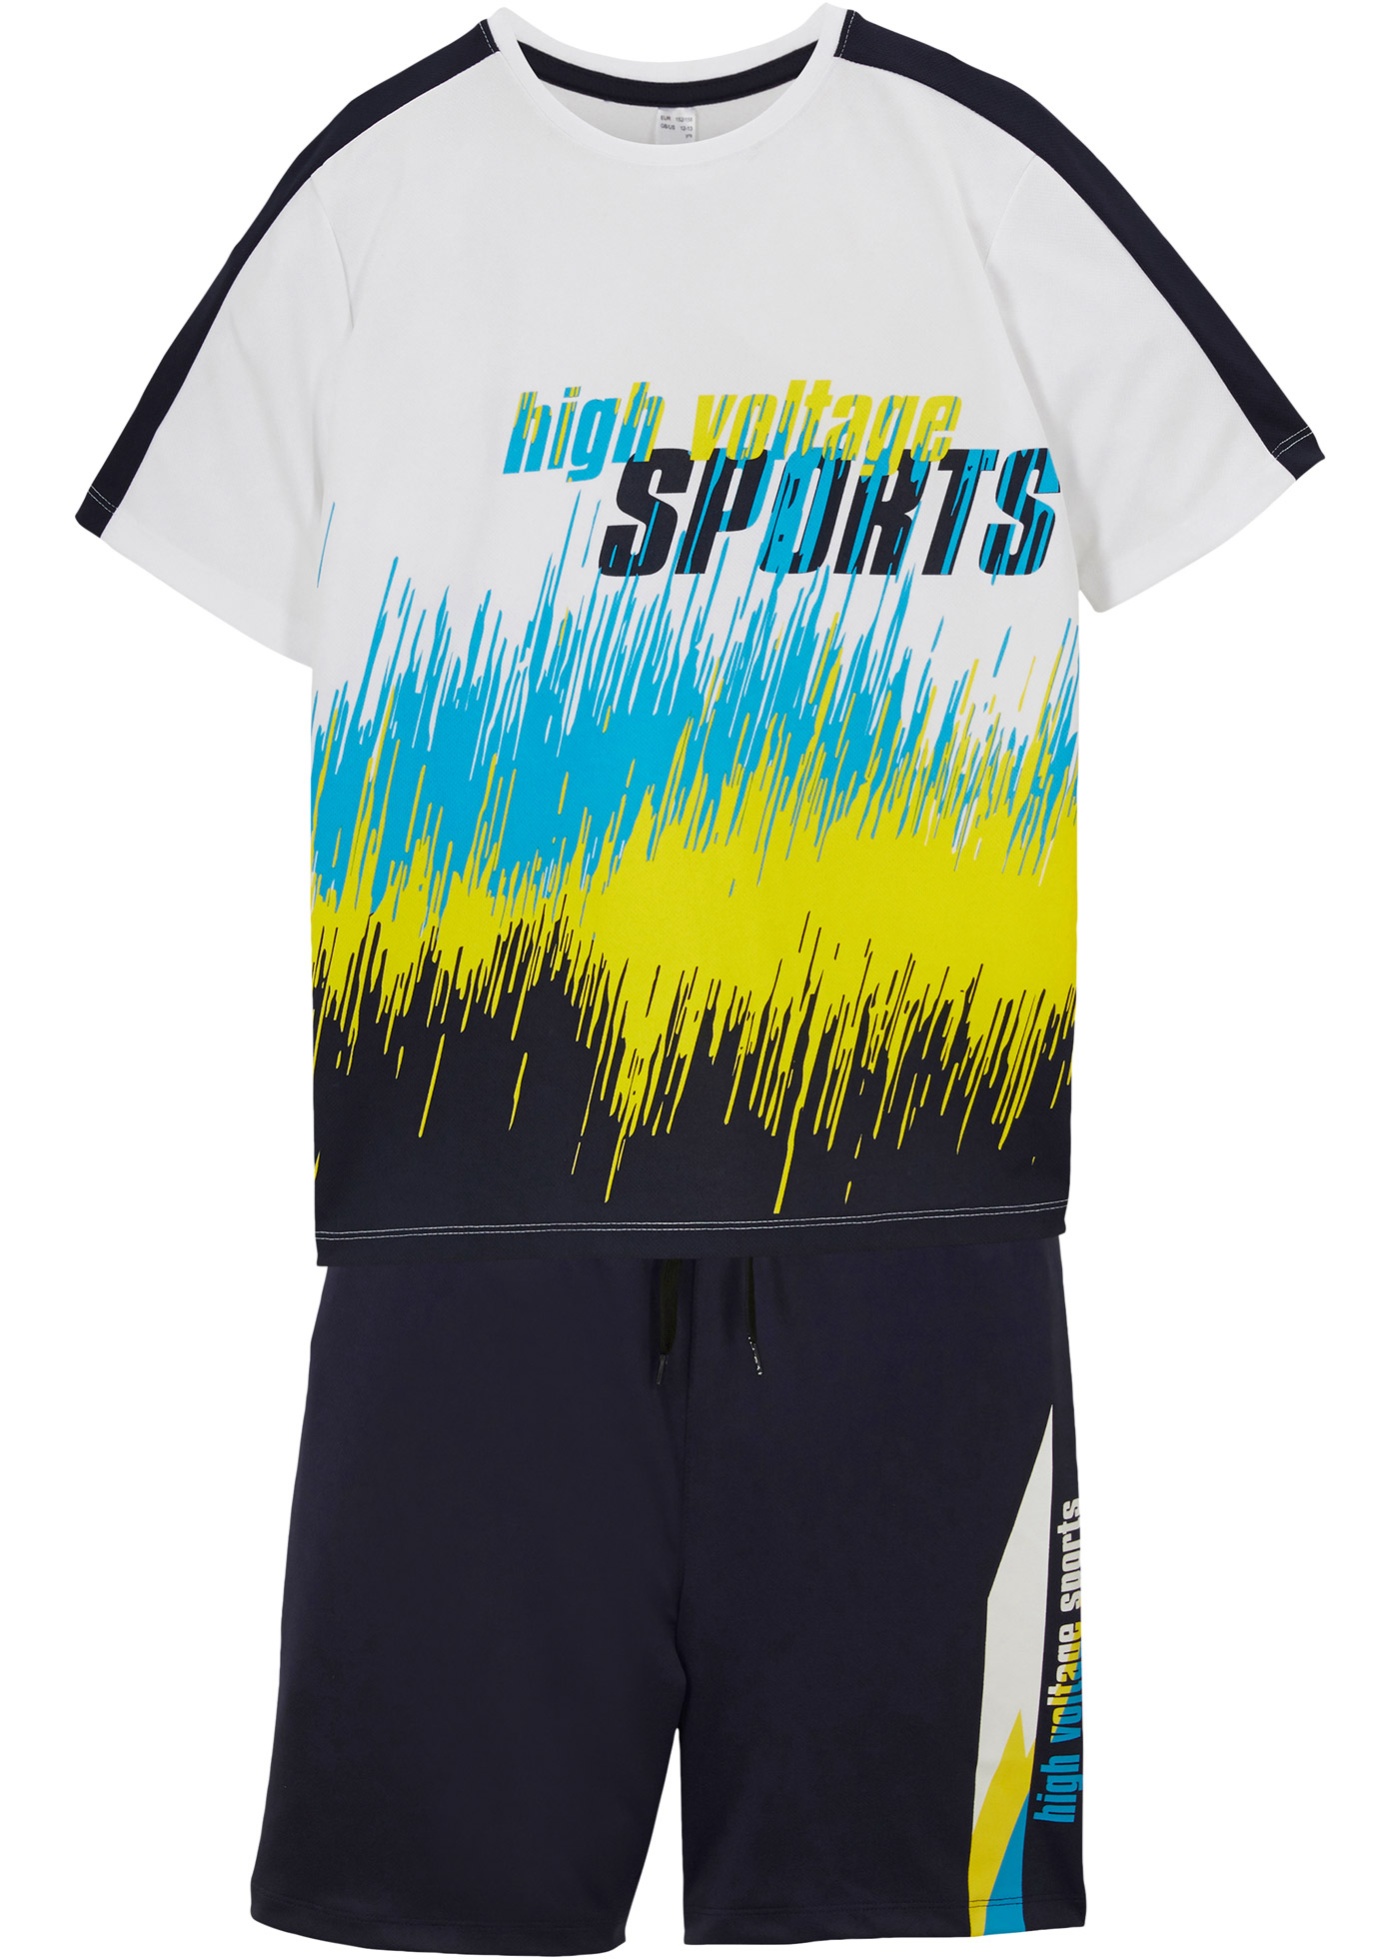 Buntes Set mit Sport-Print (90806795) in weiß